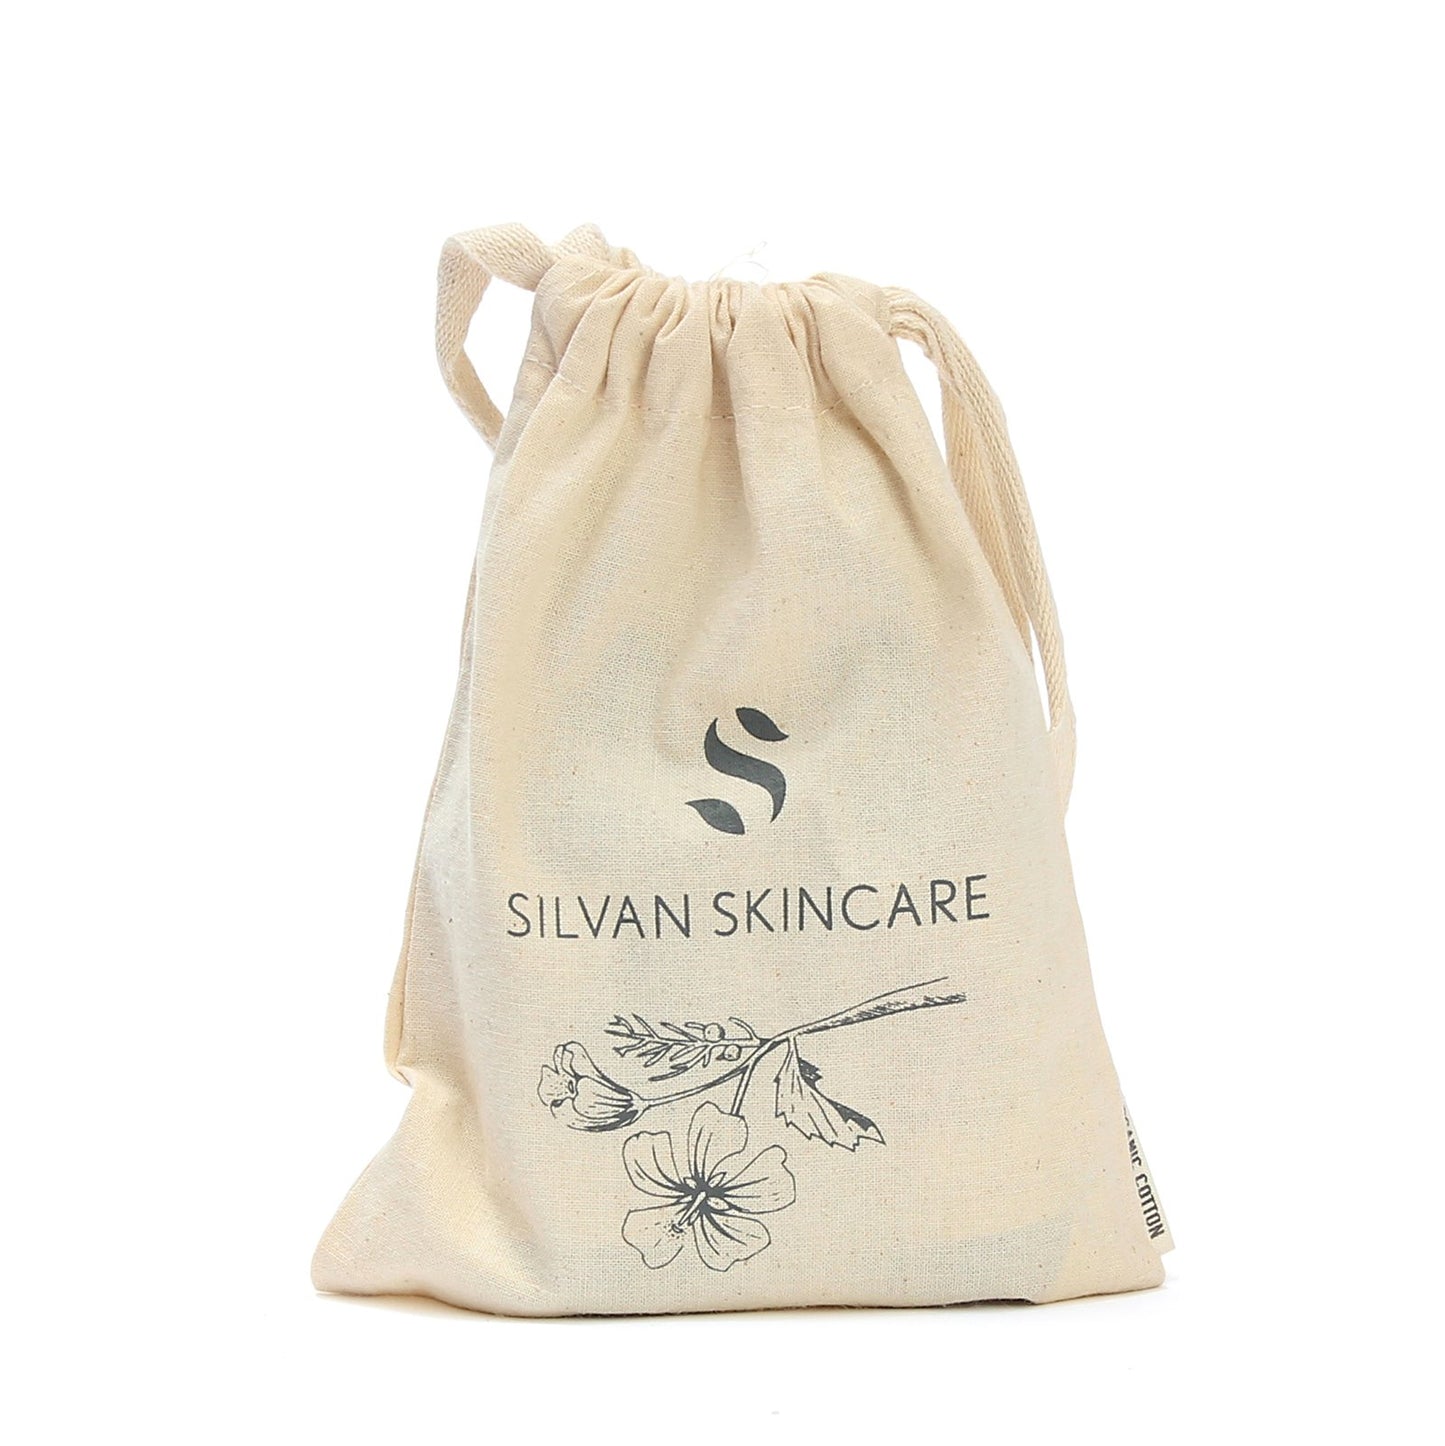 Silvan Skincare Duo organic cotton drawstring bag